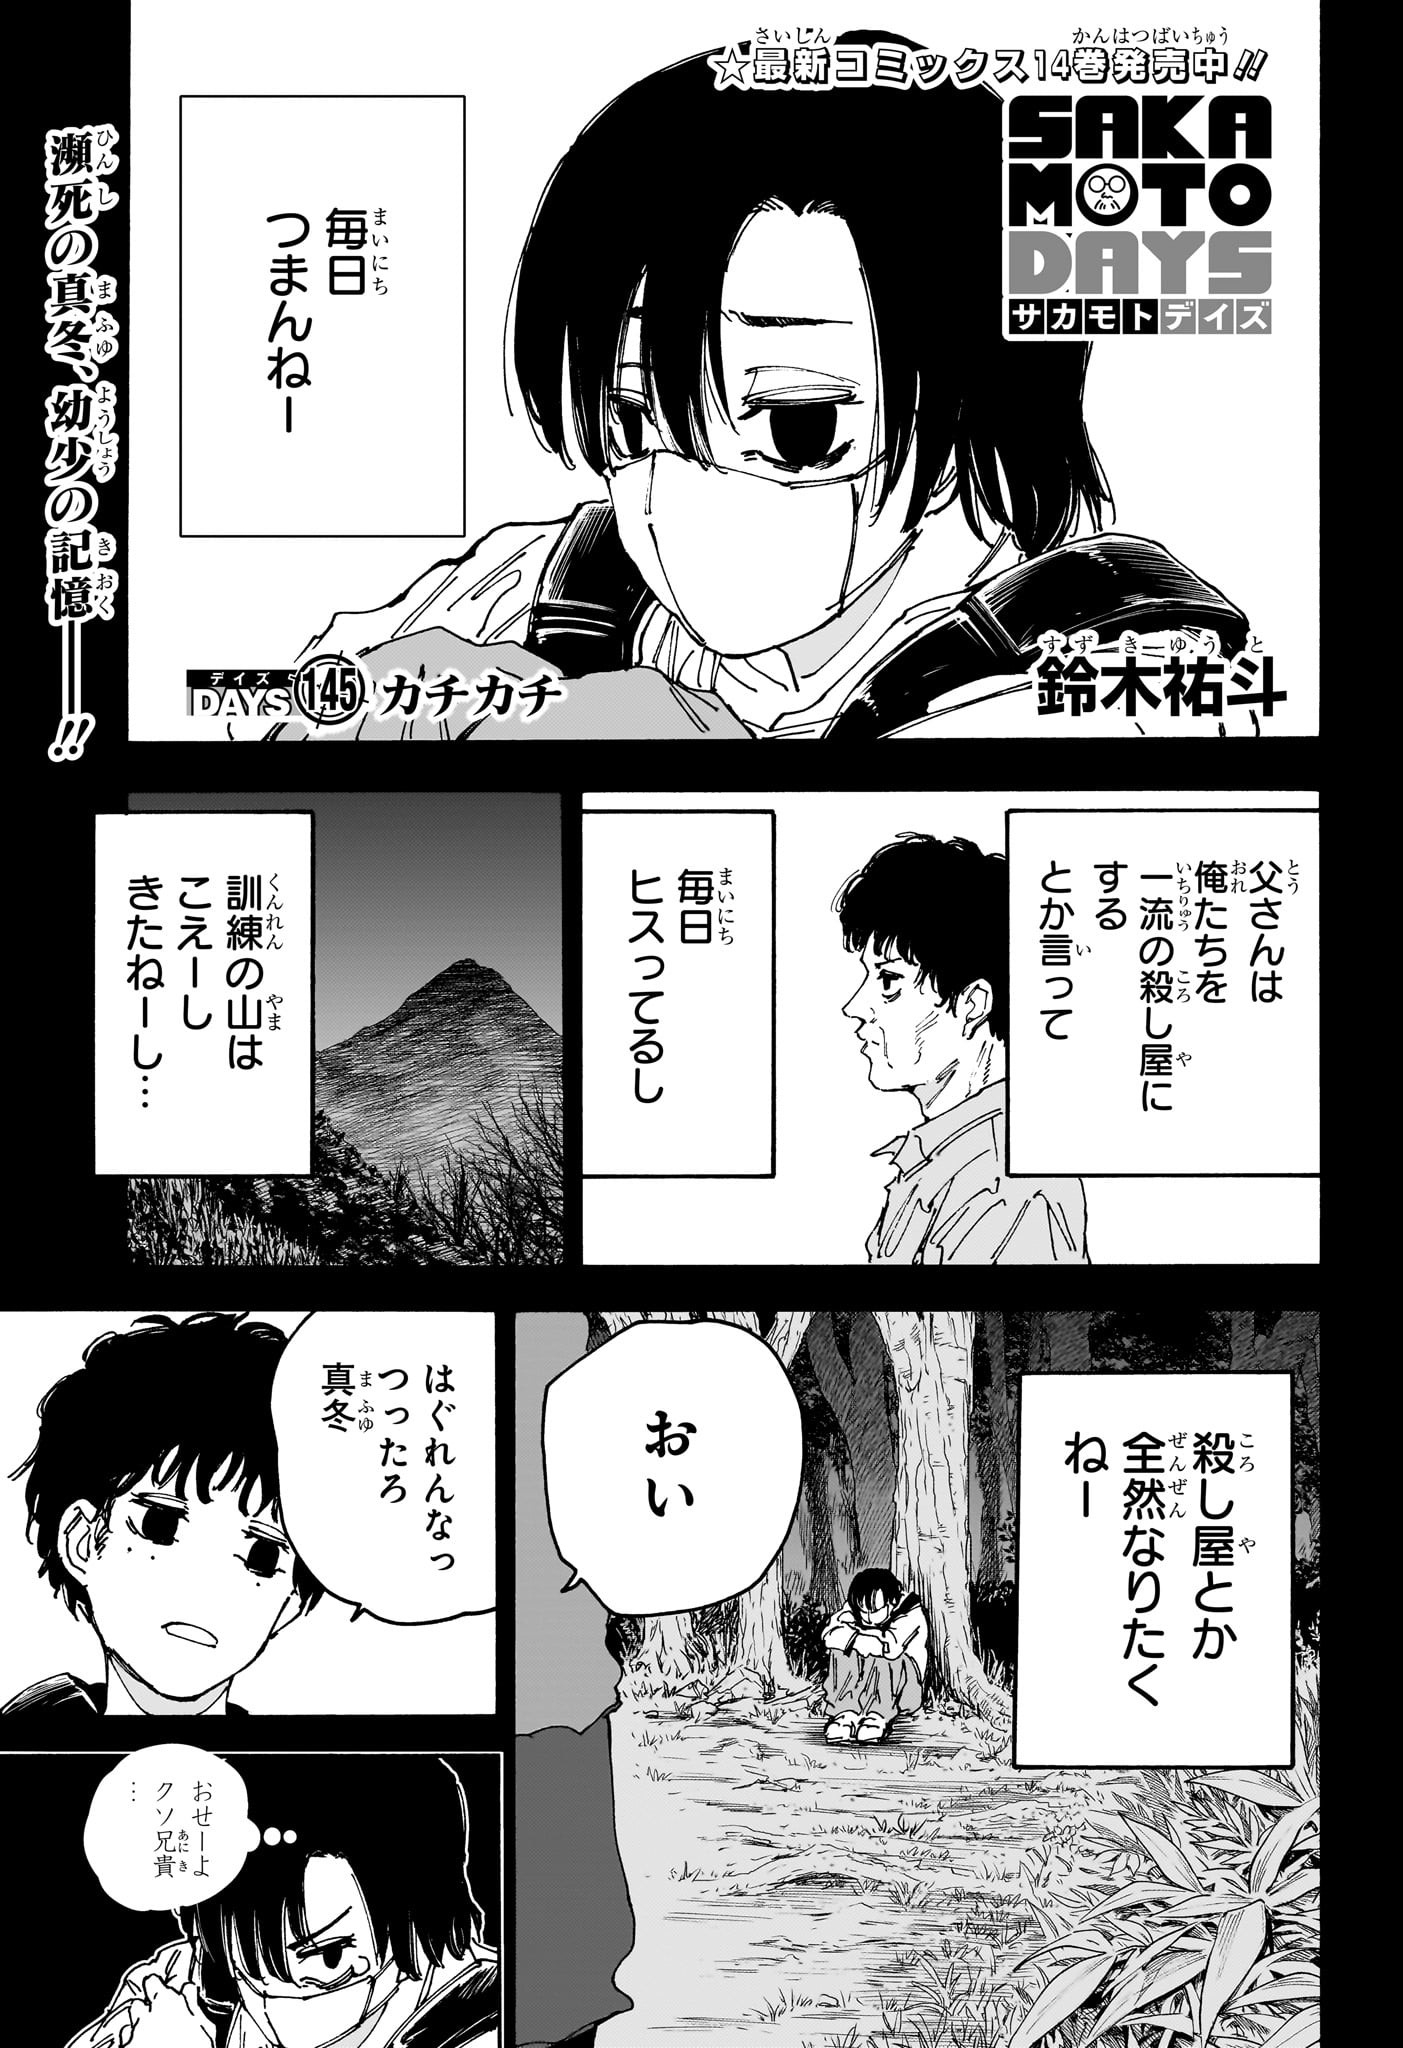 Sakamoto Days - Chapter 145 - Page 1